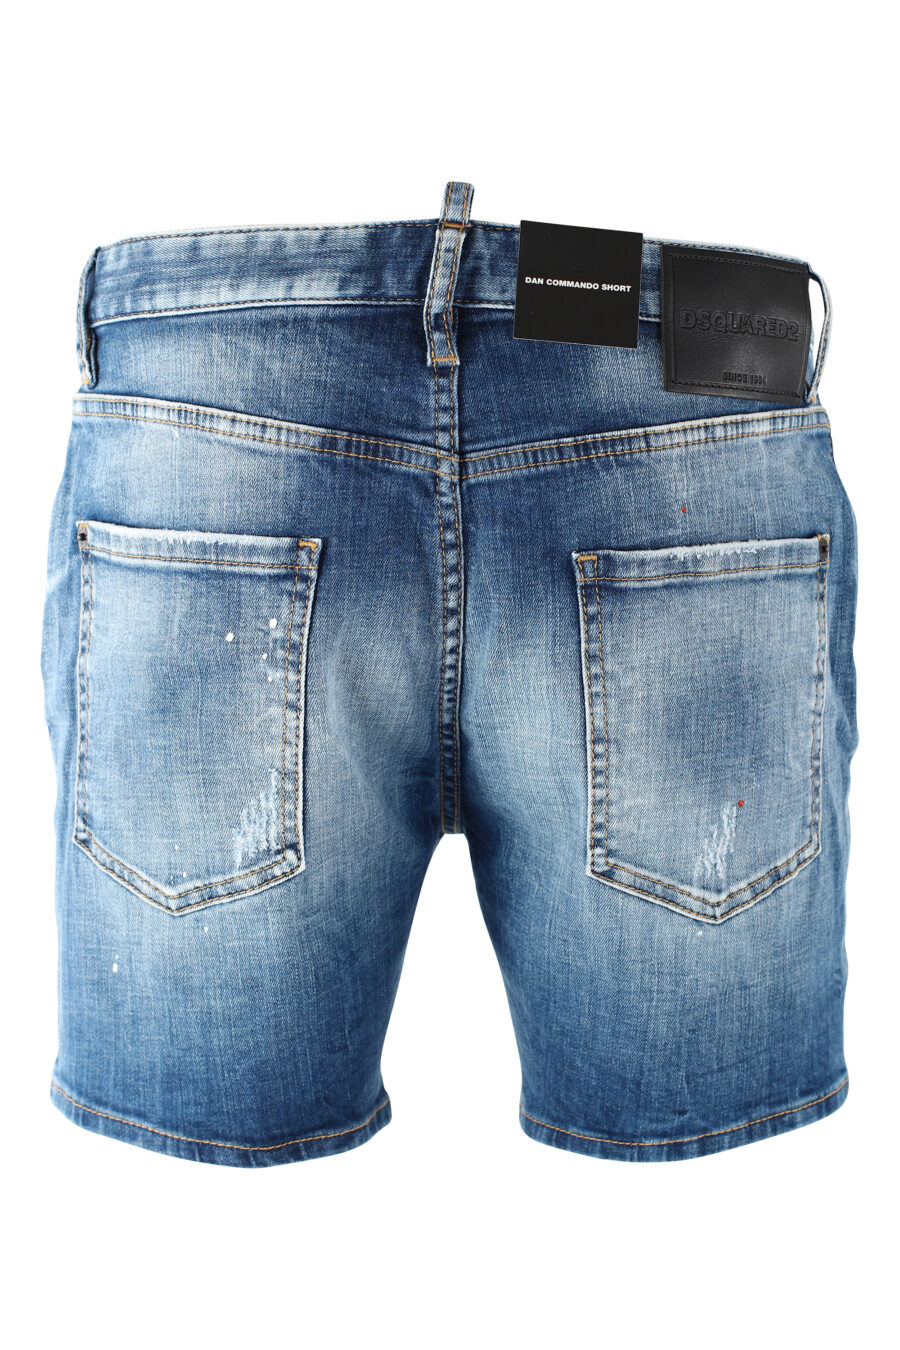 Pantalón vaquero corto azul con doble logo "icon" frontal - IMG 9707